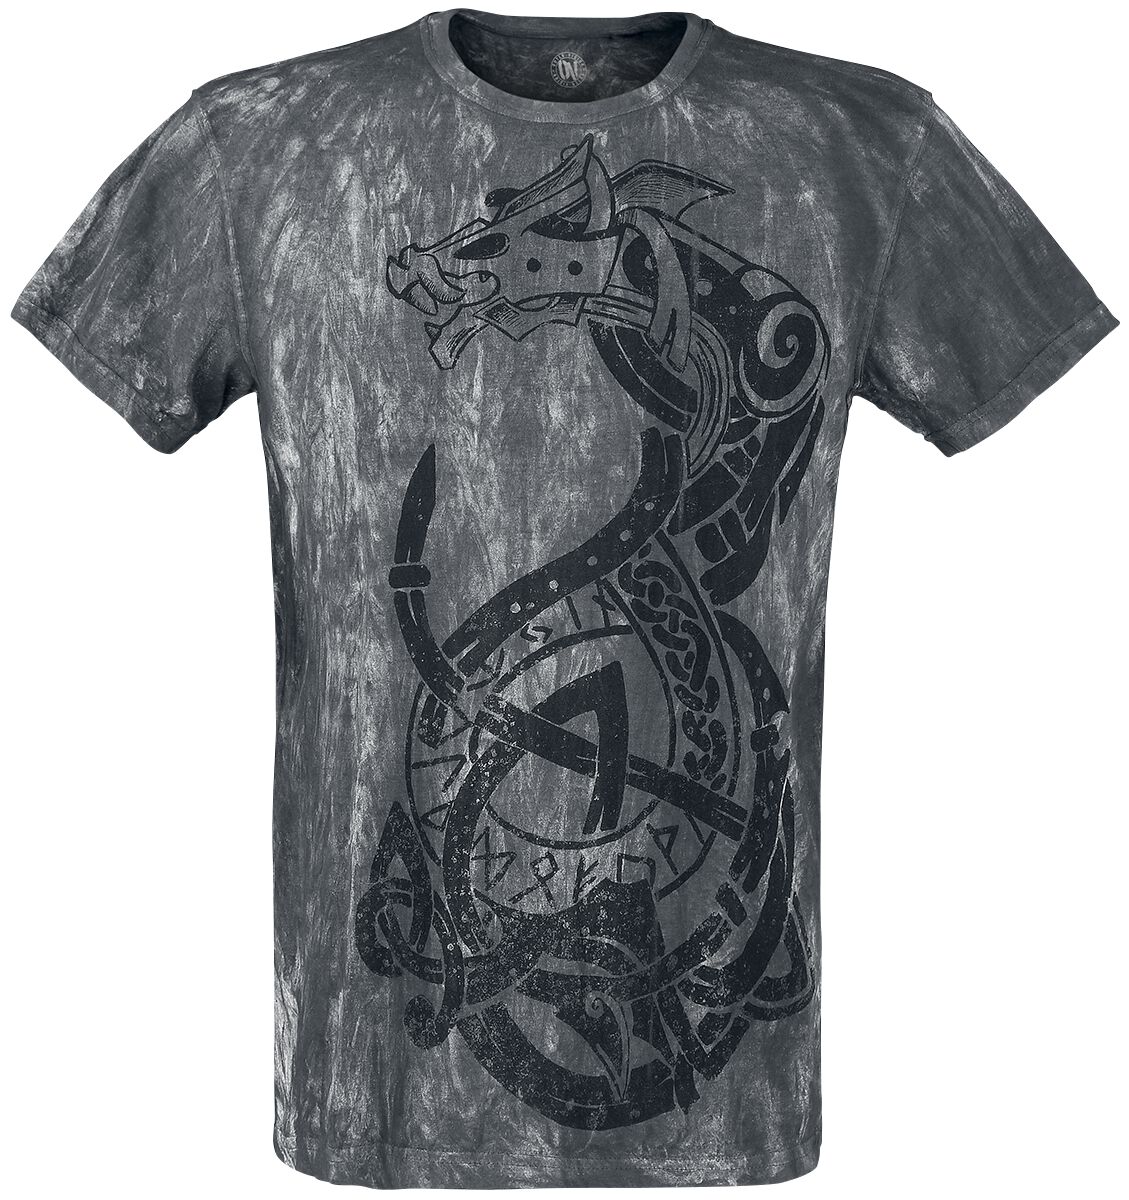 Outer Vision - Gothic T-Shirt - Viking Warrior - S bis 4XL - für Männer - Größe L - grau